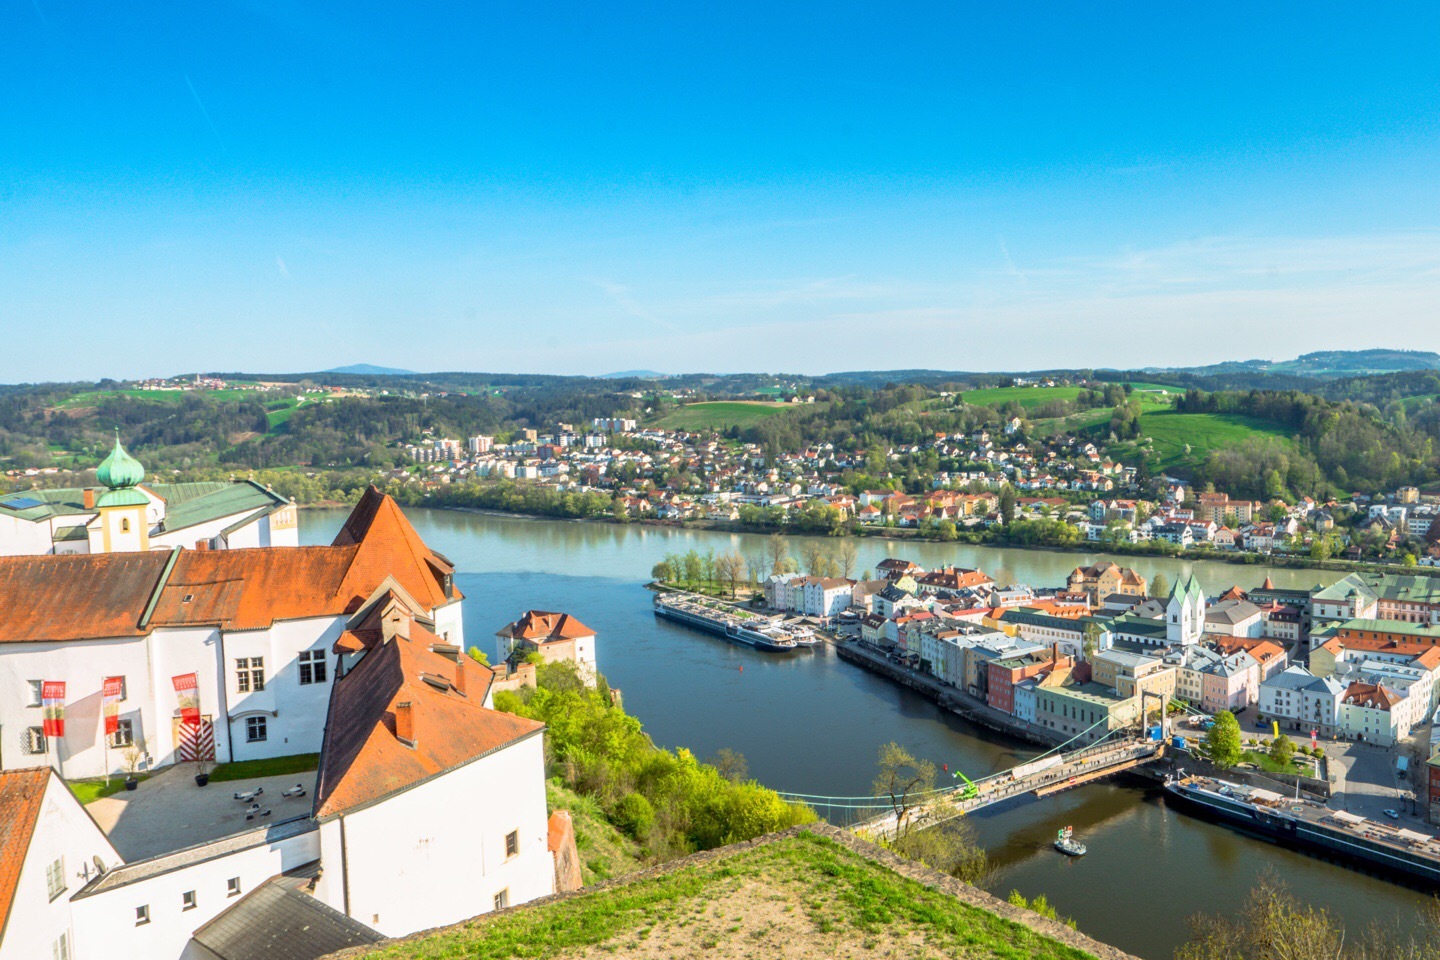 德国帕绍,位于多瑙河、因河和伊尔茨河的交汇